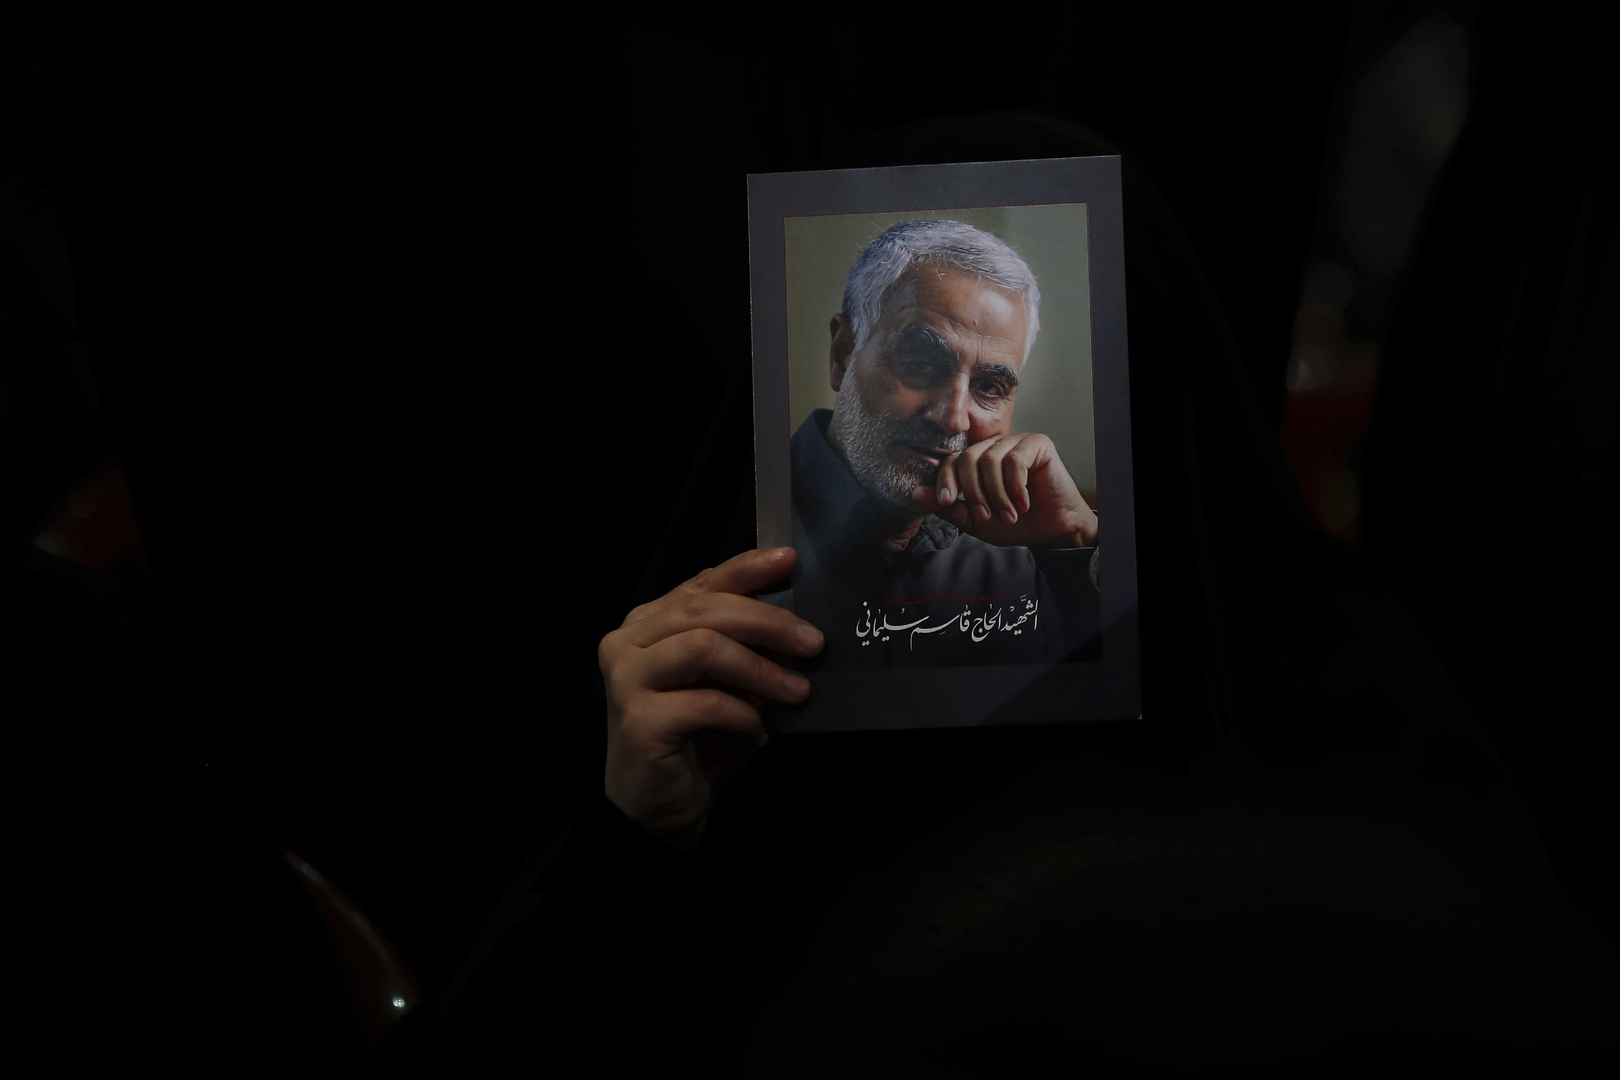 الحرس الثوري الإيراني: مقتل كل قادة الولايات المتحدة لن يكون كافيا للأخذ بثأر قاسم سليماني